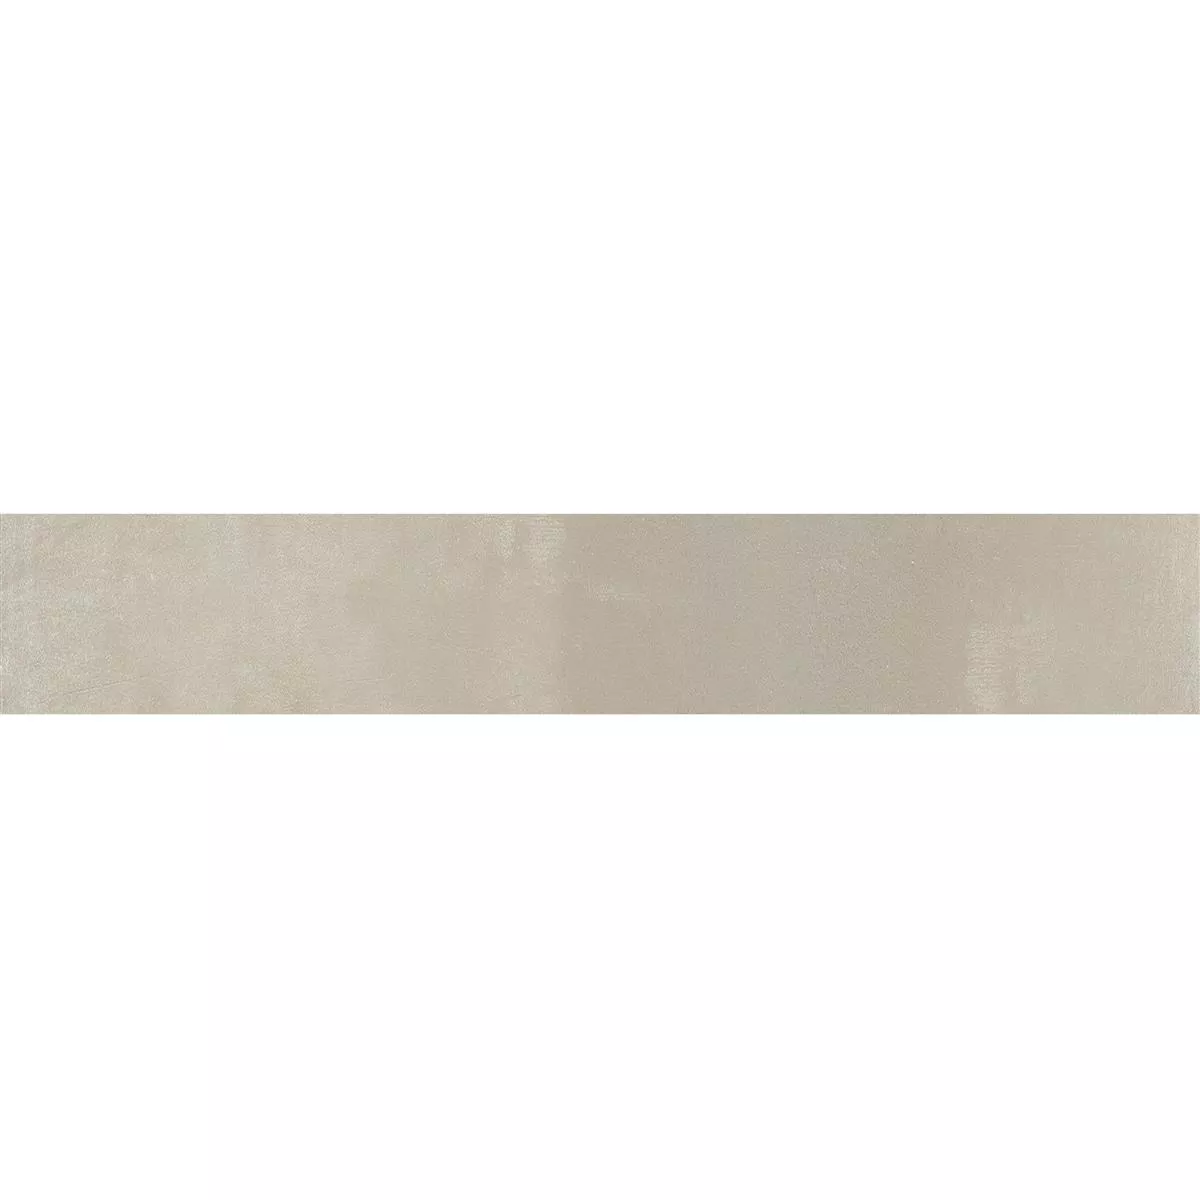 Plint Brazil Beige 6,5x60cm